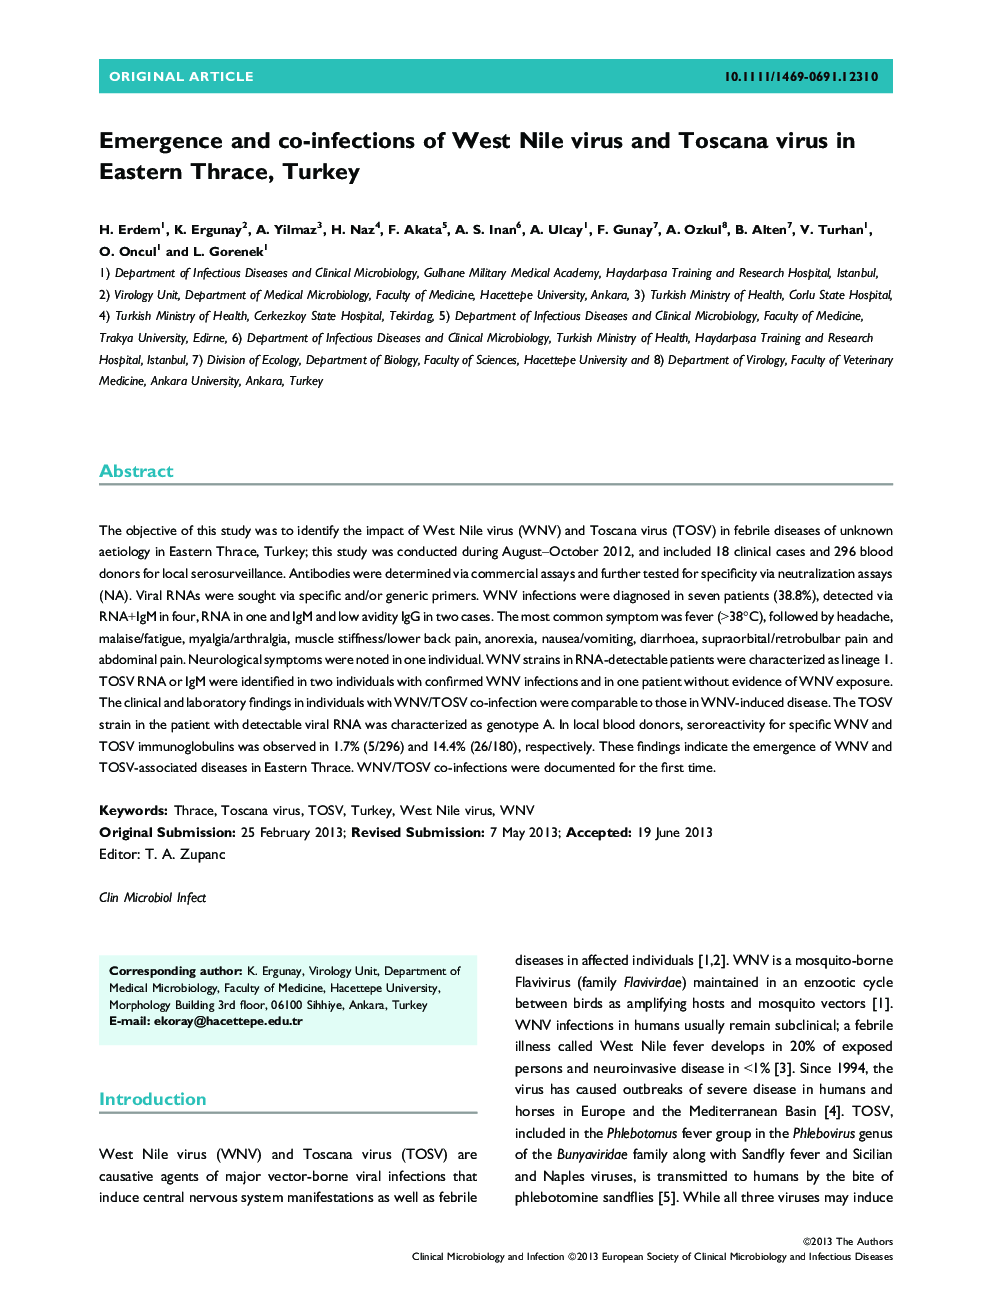 ظهور و عفونت های مشترک ویروس غرب نیل و ویروس توسانا در شرق تراکیه، ترکیه 